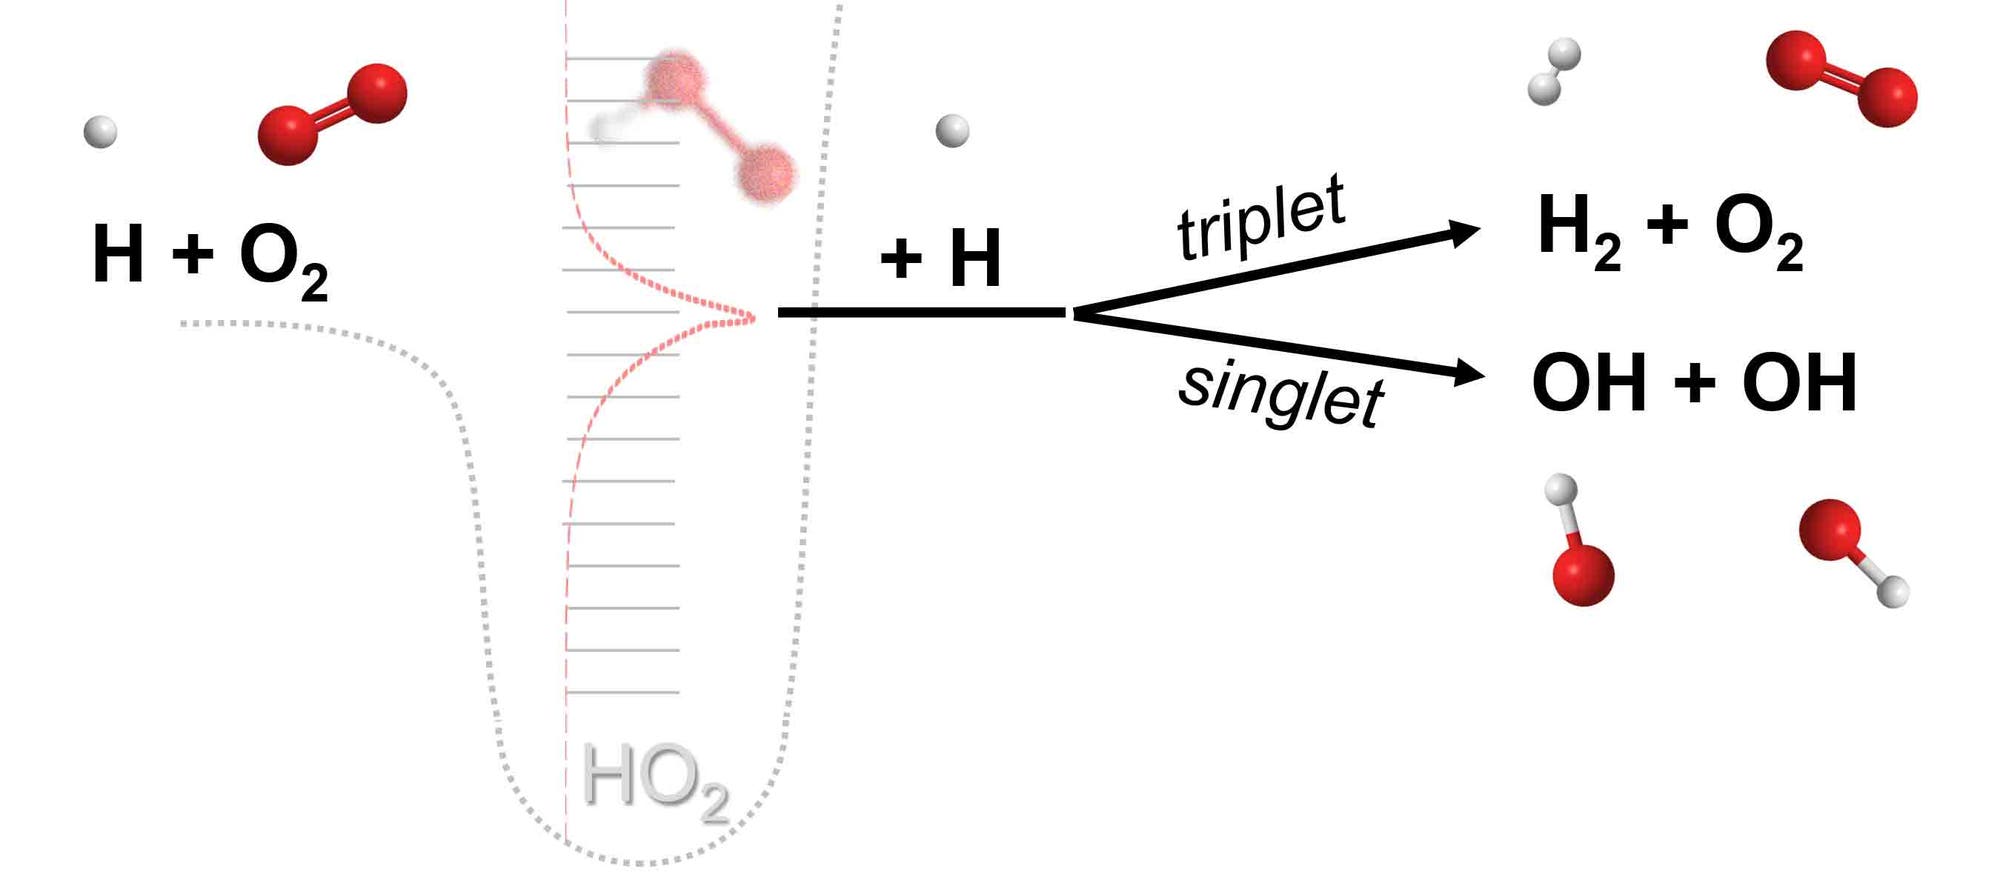 Reaktionsschema der chemisch termolekularen Reaktion